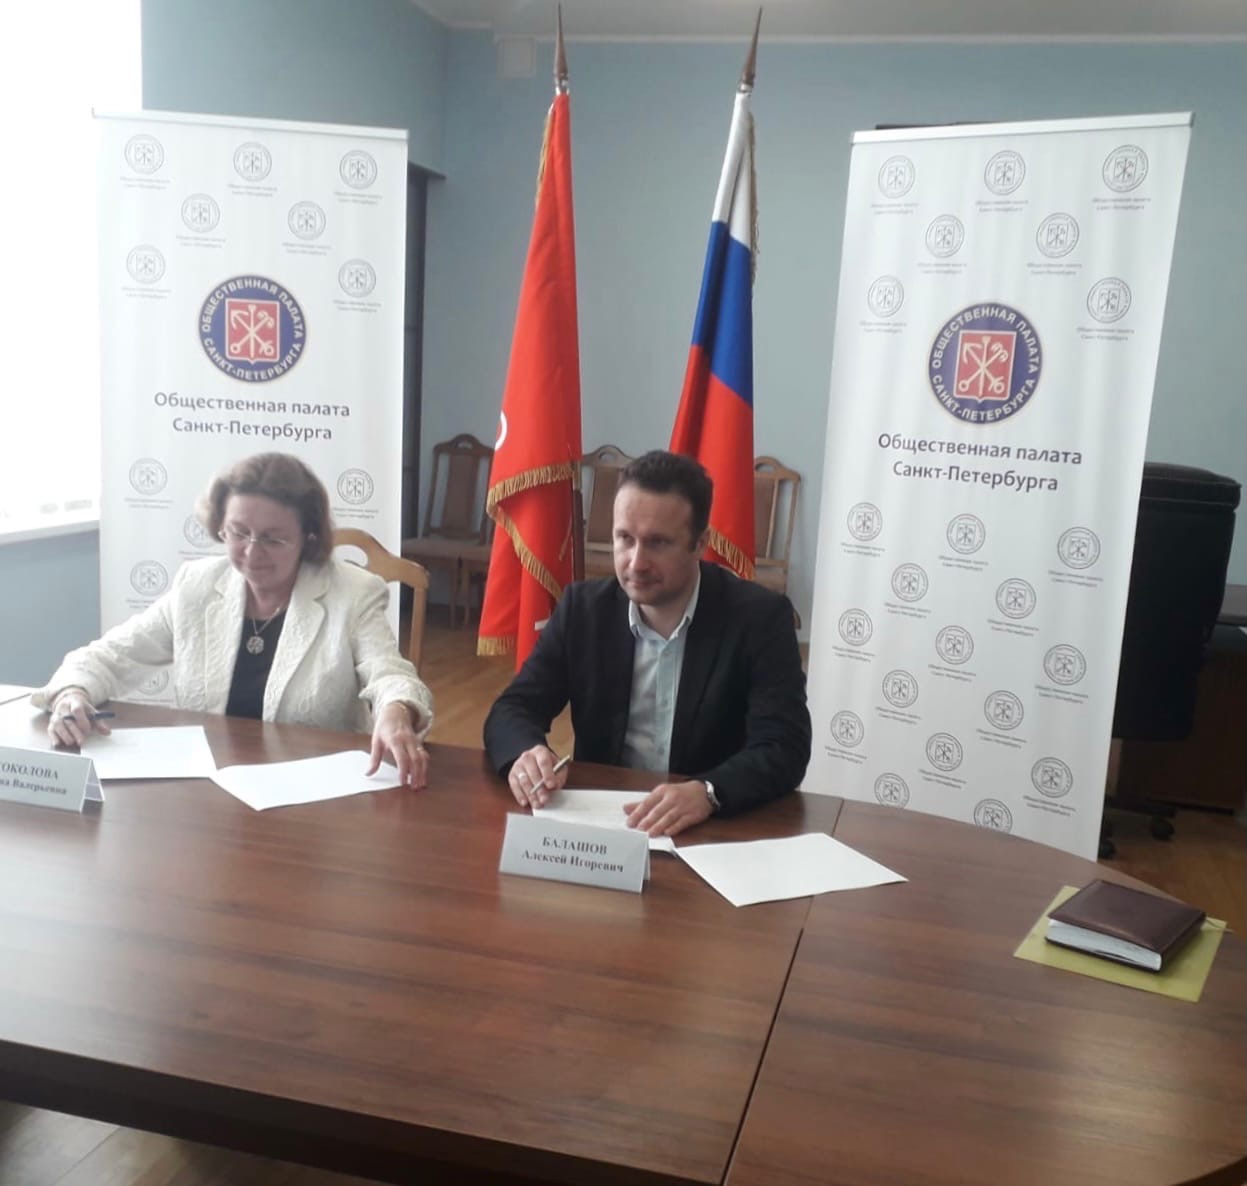 Заключено соглашение о сотрудничестве между Институтом и Общественной палатой Санкт-Петербурга